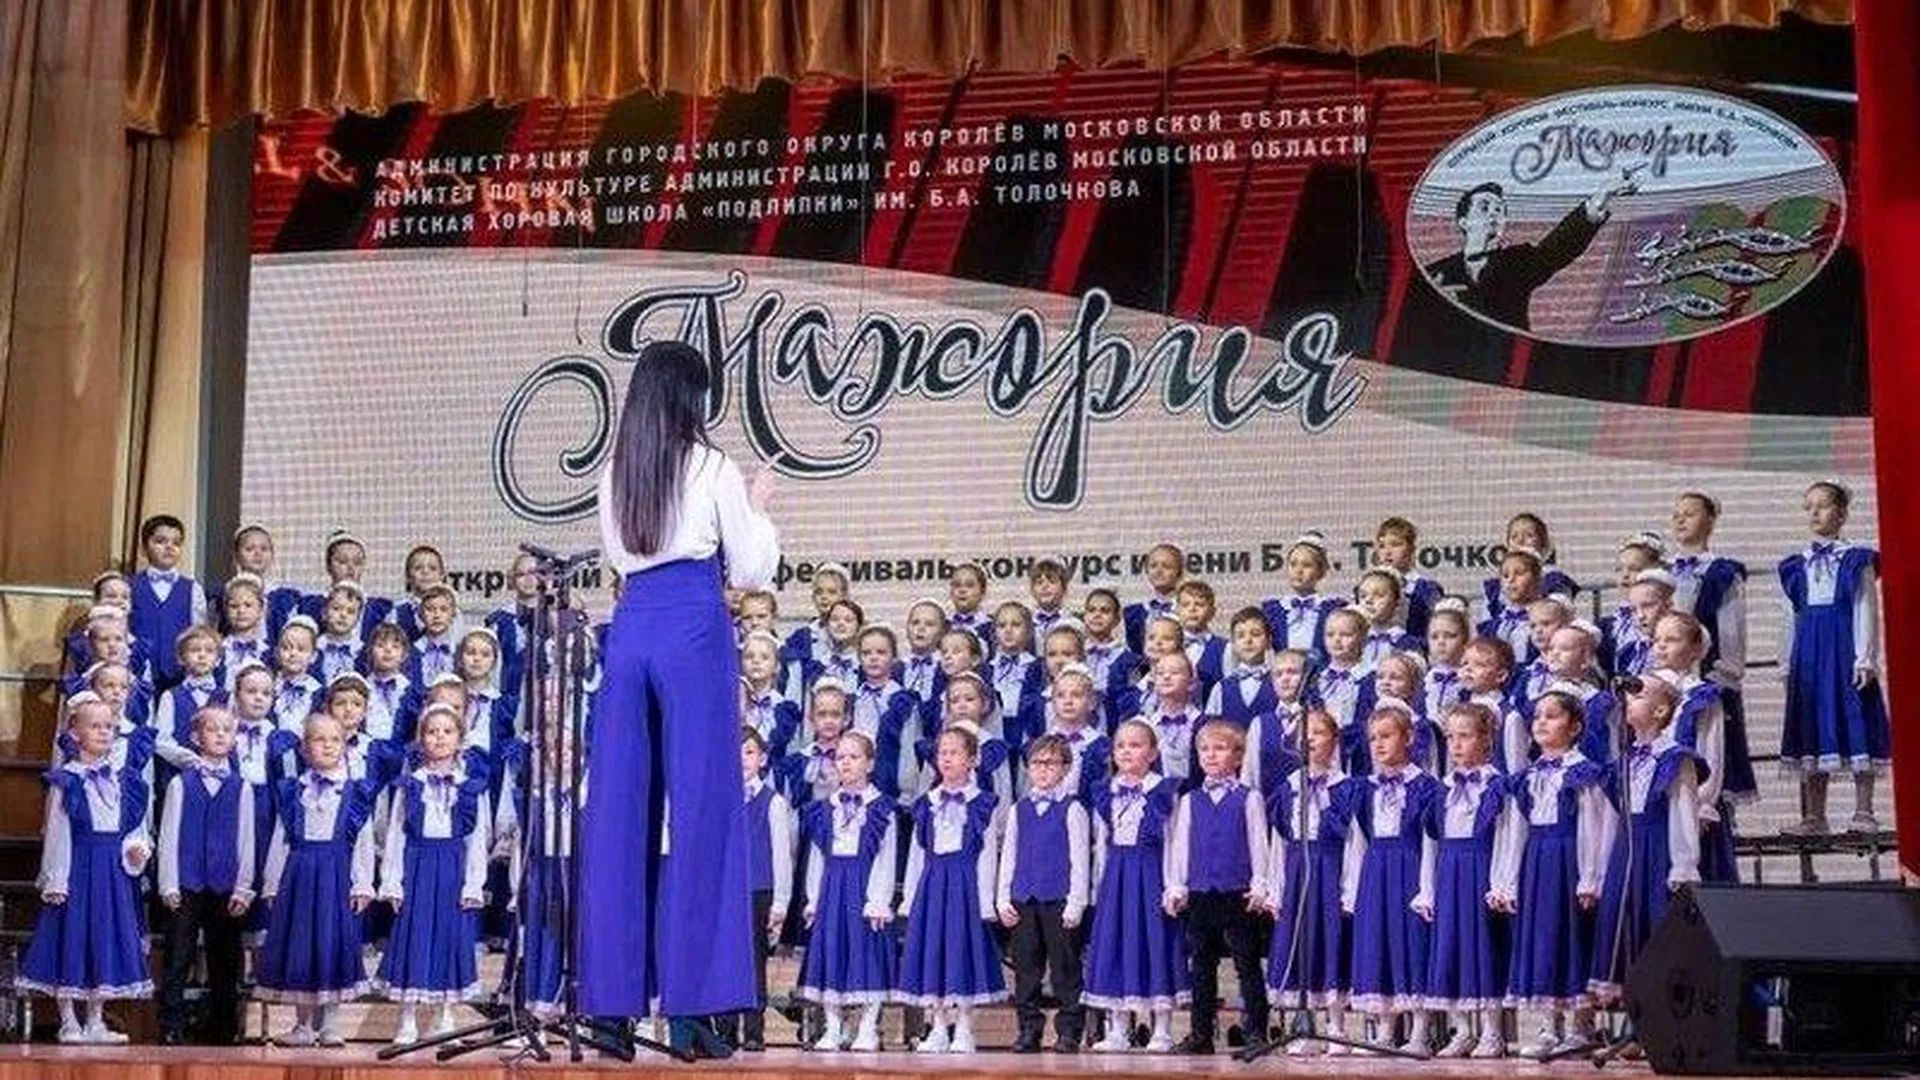 Открытый хоровой фестиваль-конкурс «Мажория» состоялся в подмосковном Королеве